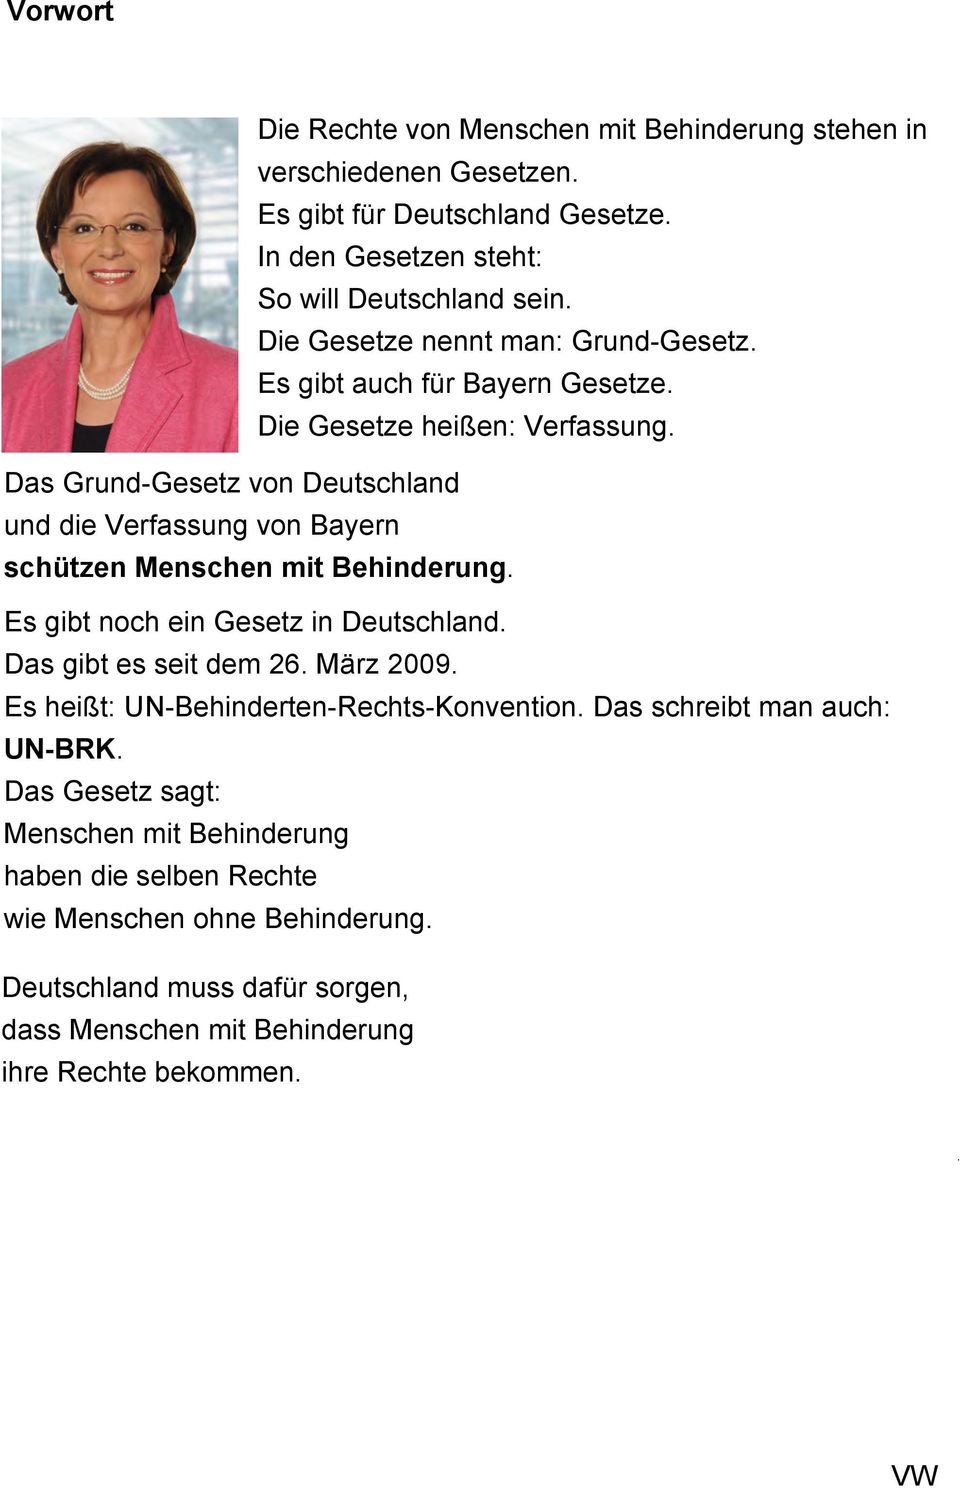 Das Grund-Gesetz von Deutschland und die Verfassung von Bayern schützen Menschen mit Behinderung. Es gibt noch ein Gesetz in Deutschland. Das gibt es seit dem 26. März 2009.